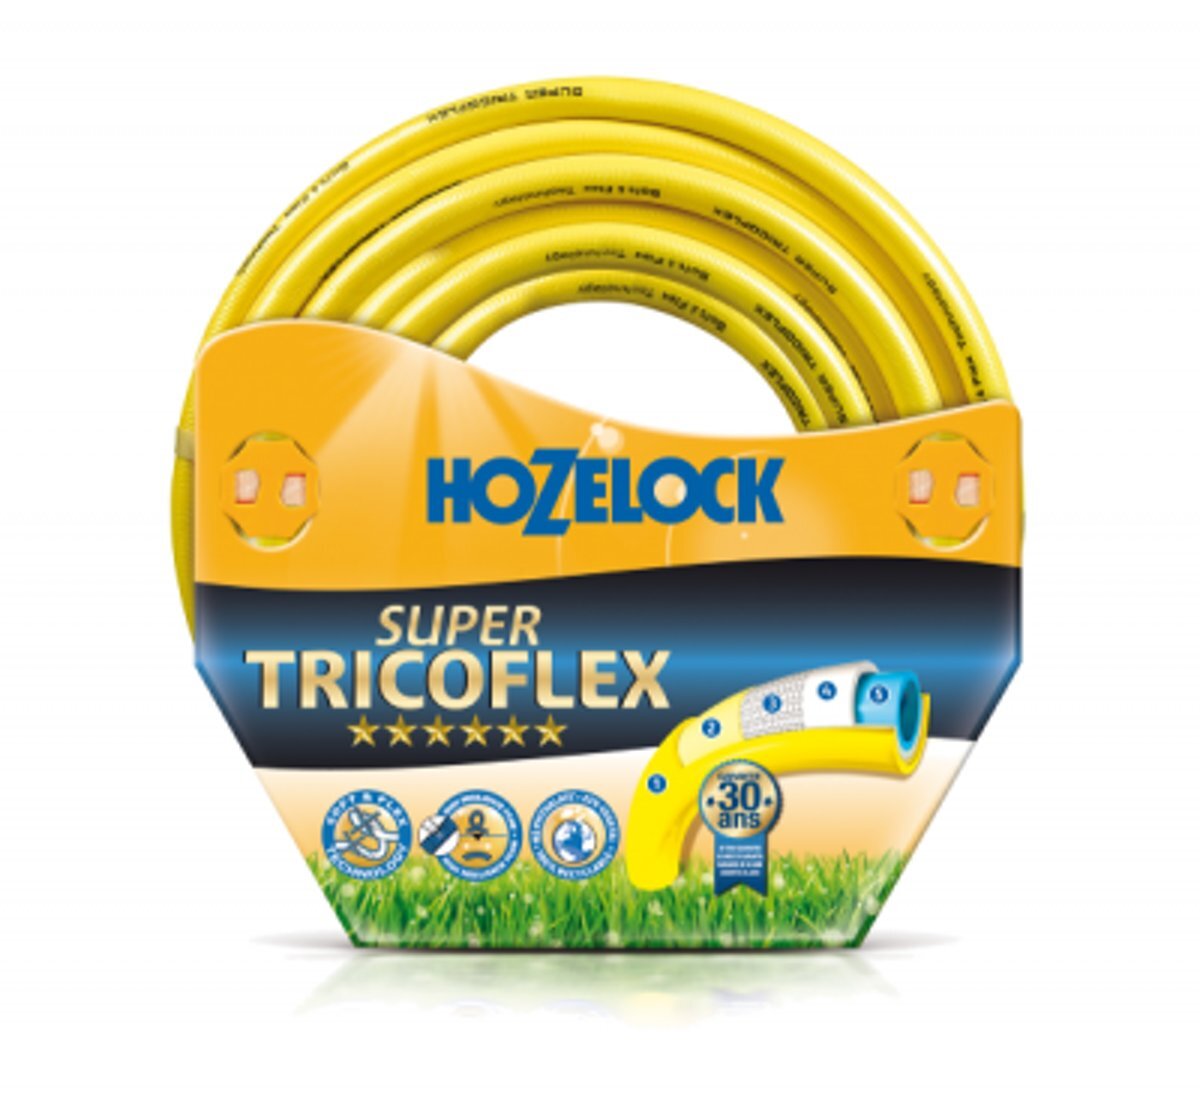 Hozelock Super Tricoflex Ultimate 12 5 mm 100 meter Groots Aanbod Tuinslangen & Haspels